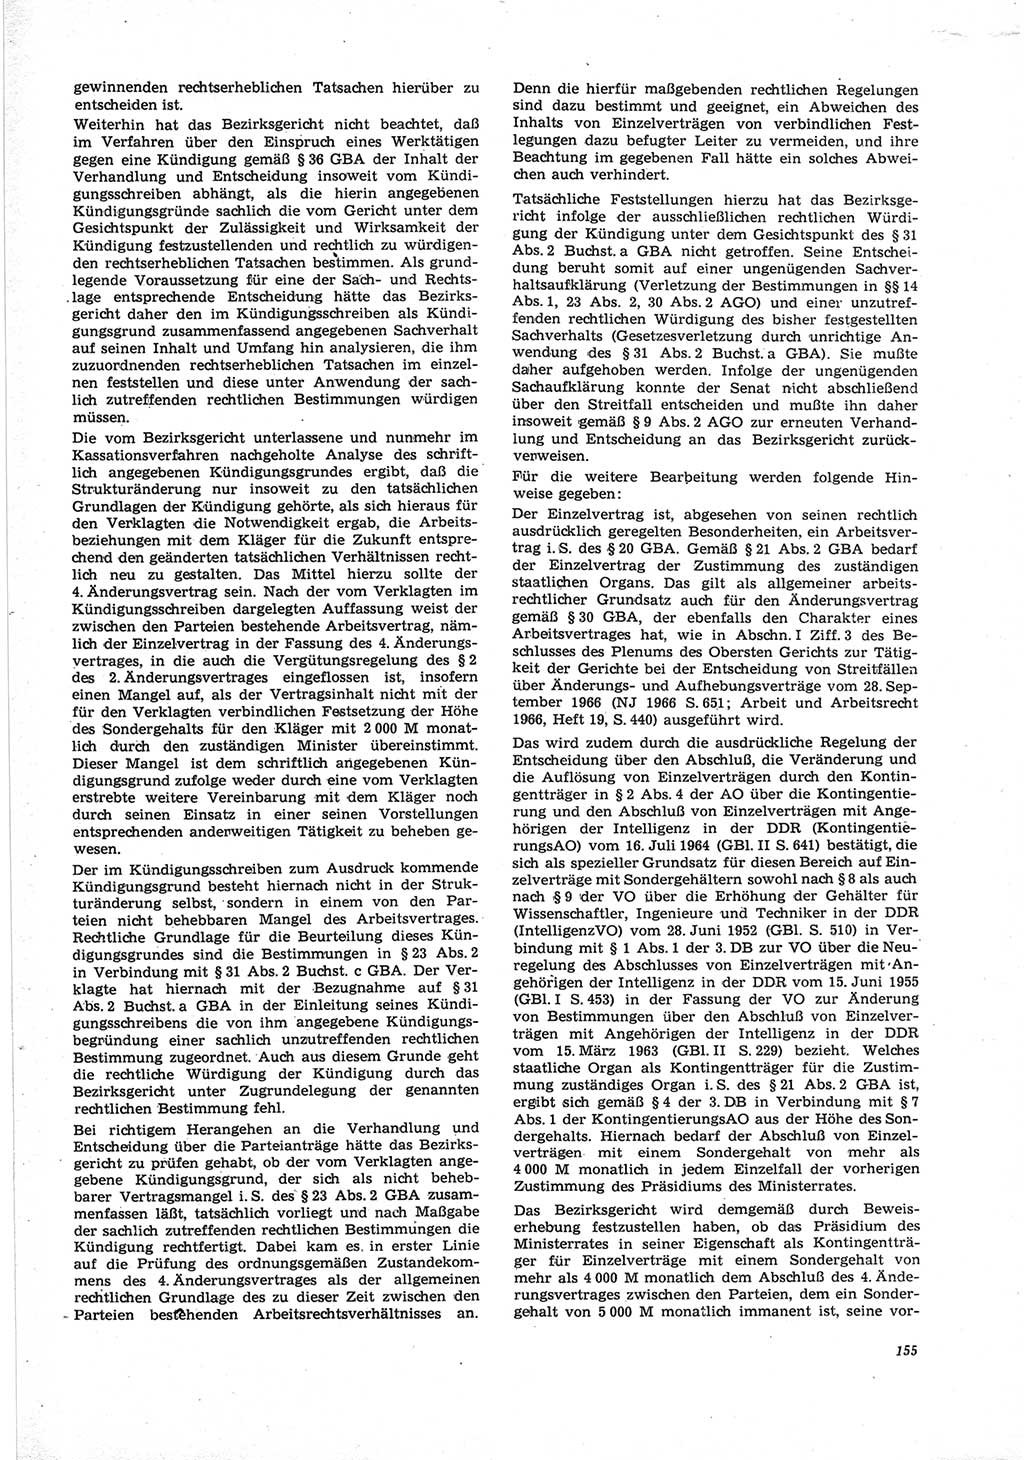 Neue Justiz (NJ), Zeitschrift für Recht und Rechtswissenschaft [Deutsche Demokratische Republik (DDR)], 25. Jahrgang 1971, Seite 155 (NJ DDR 1971, S. 155)